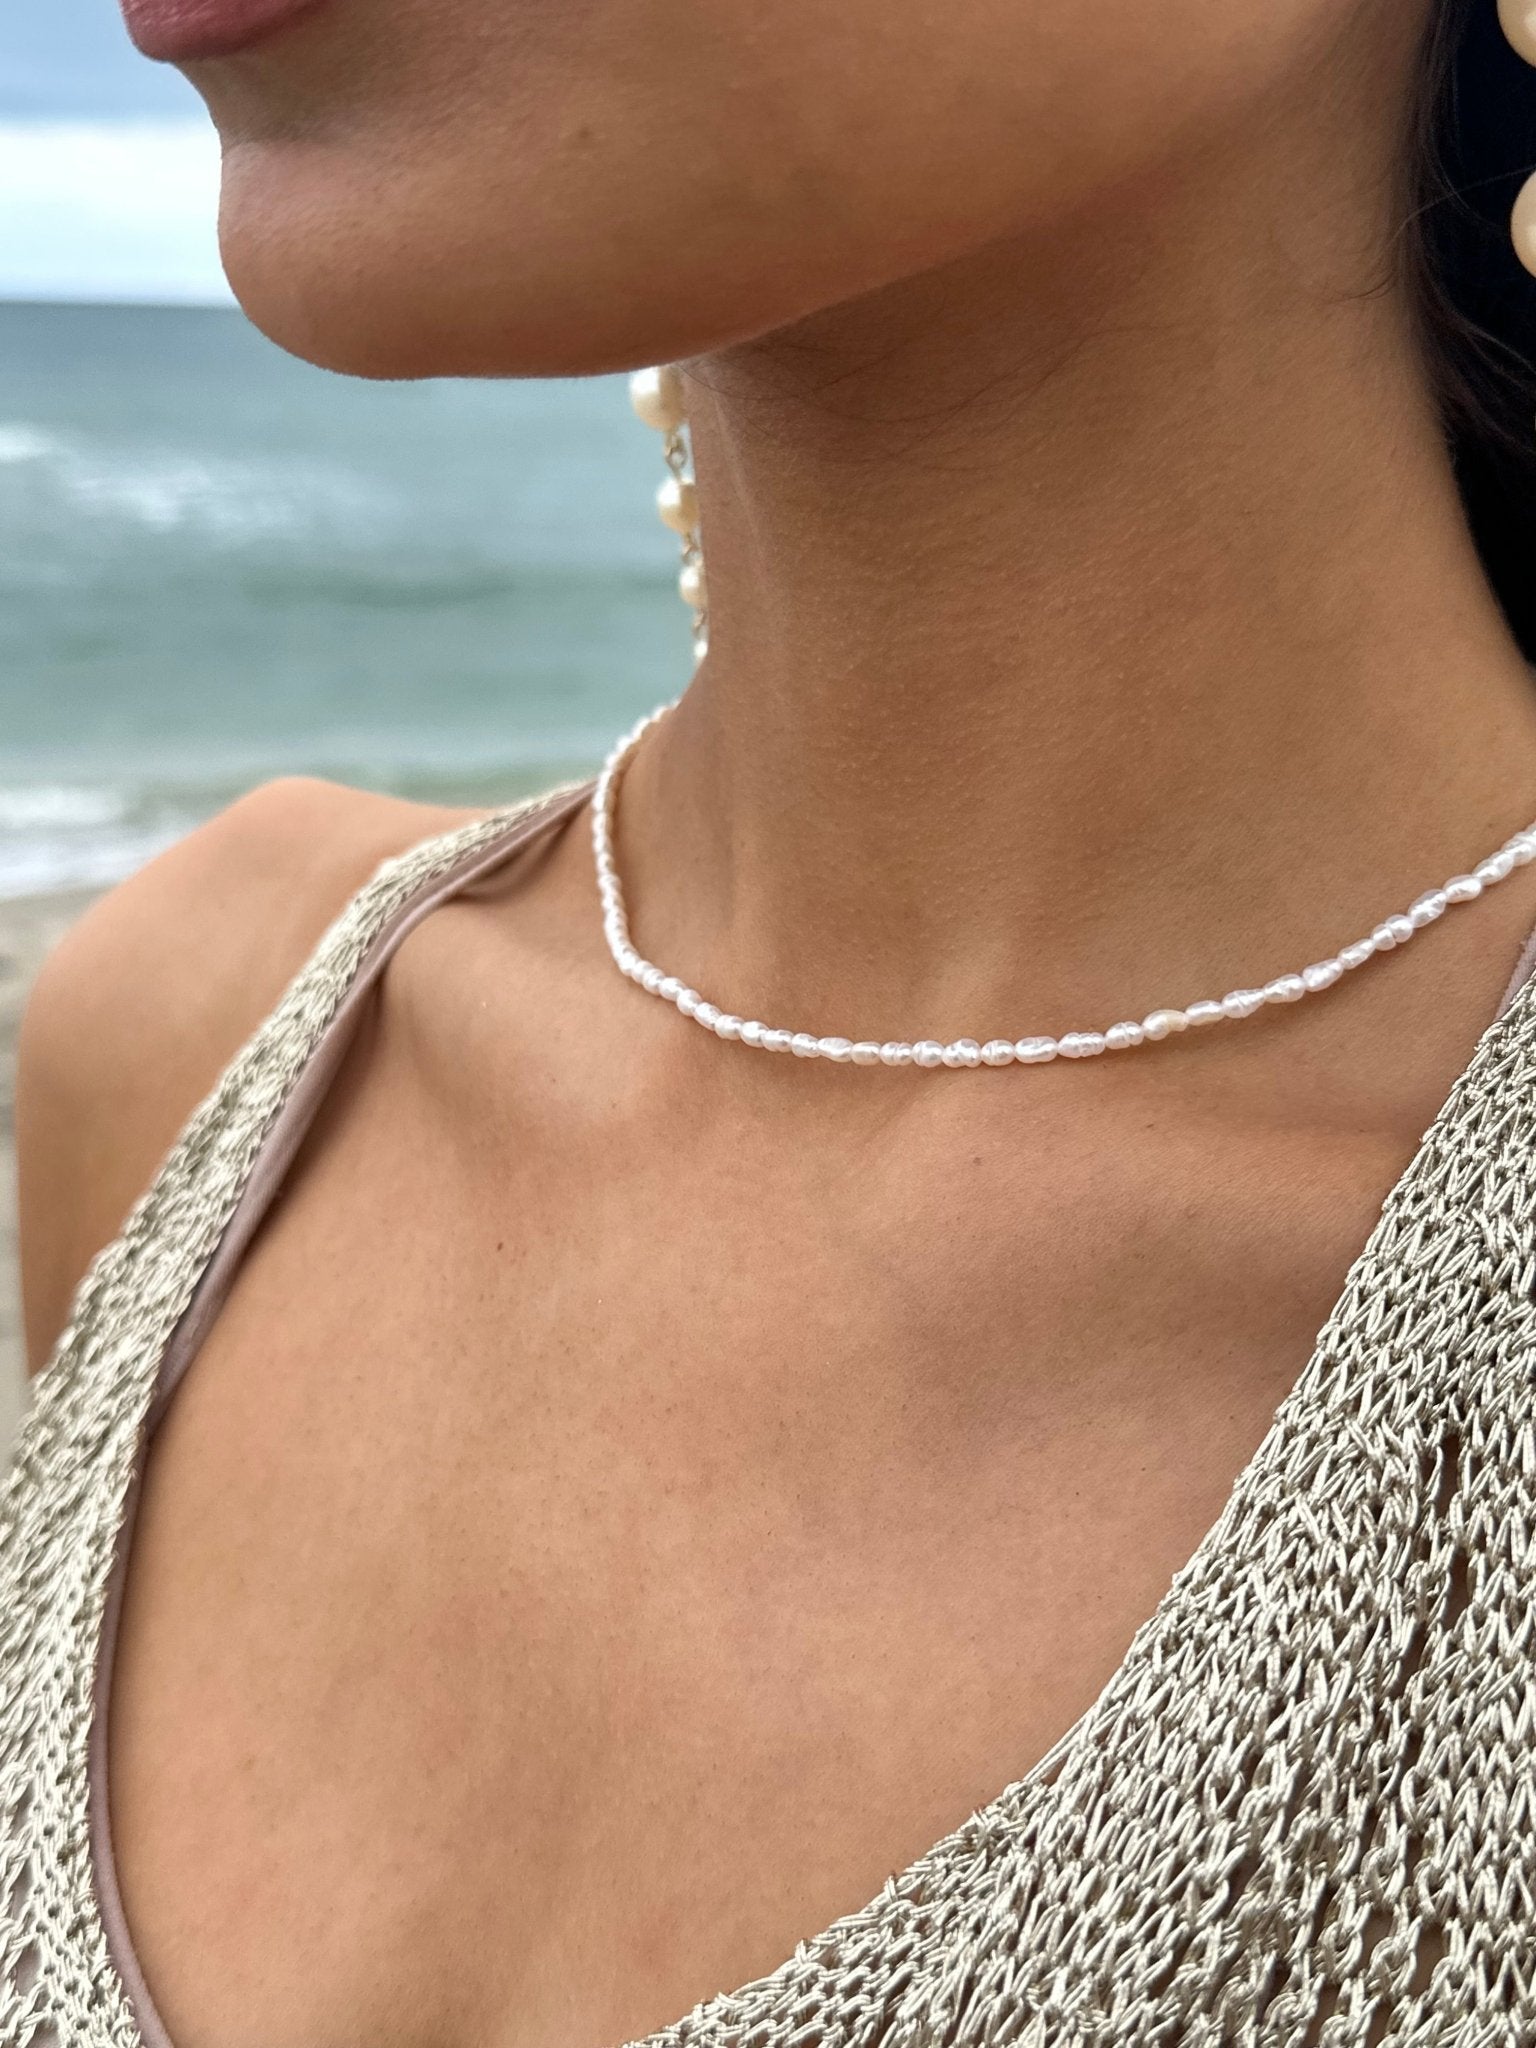 Mini pearl necklace